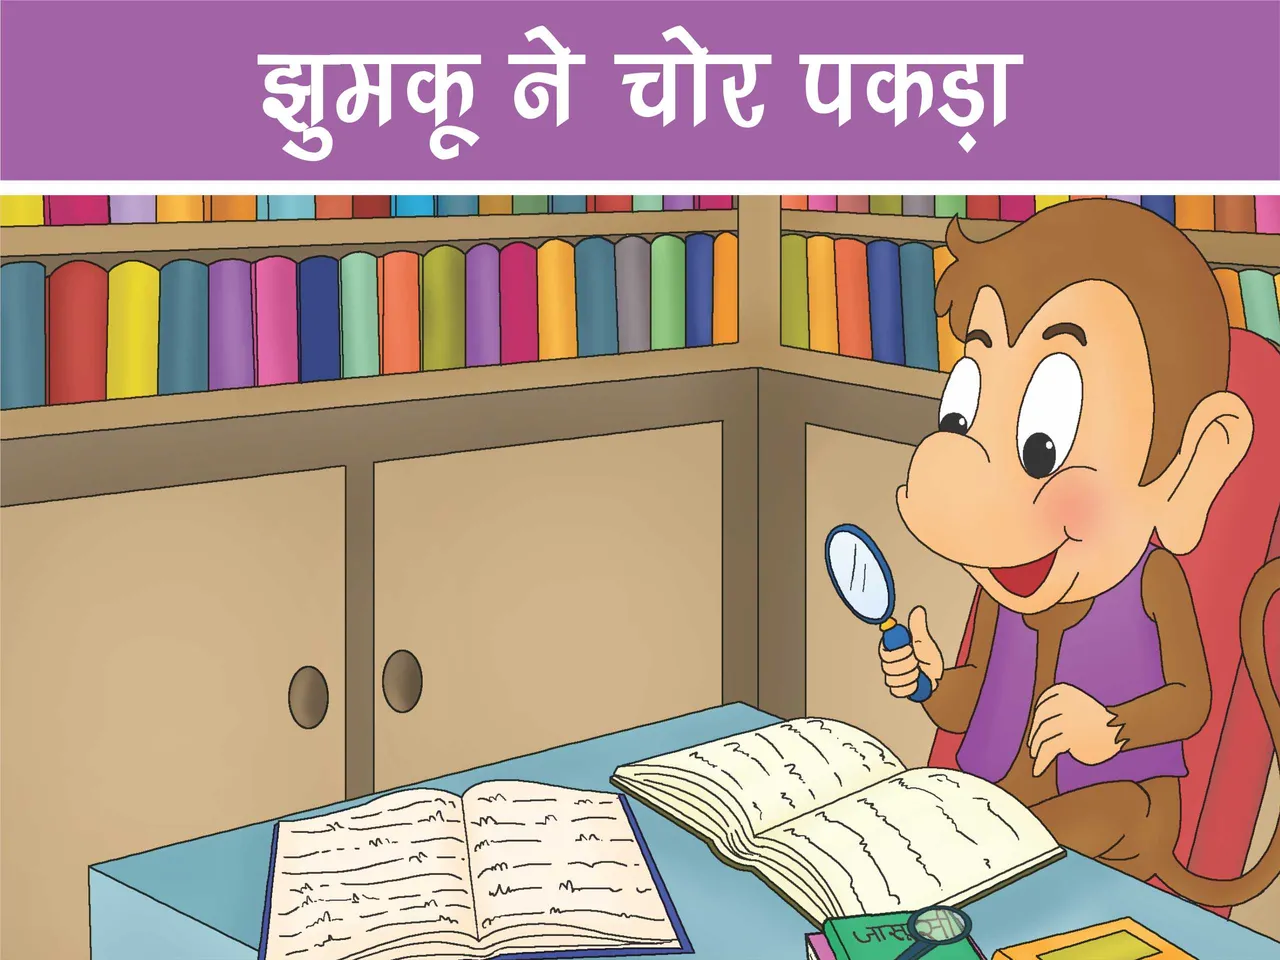 Monkey studying books cartoon image